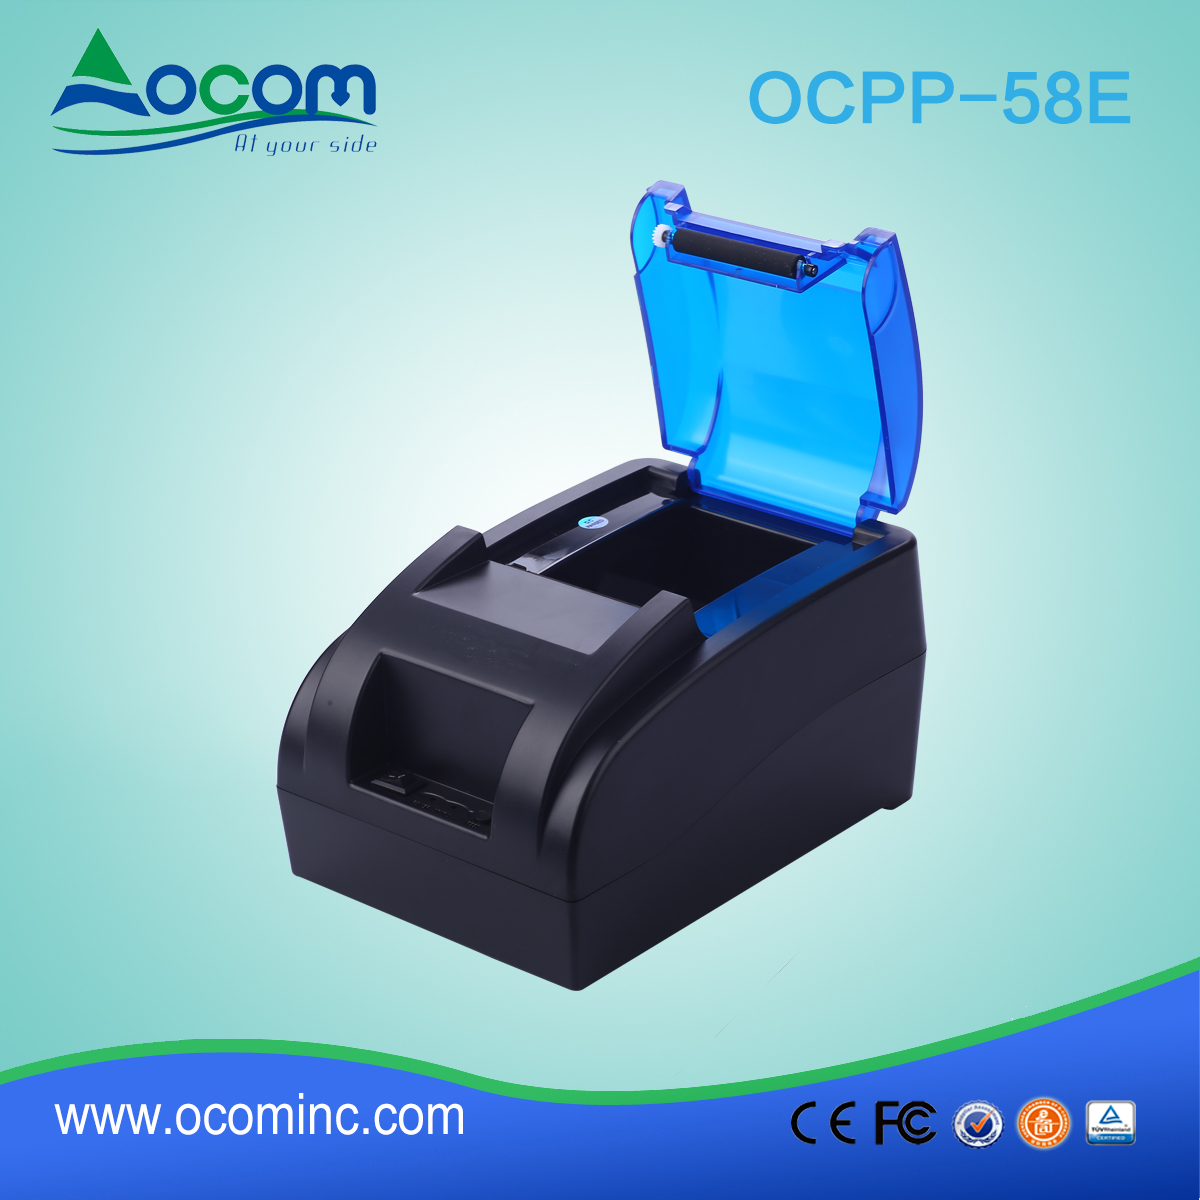 OCPP-58E-U 58mm热敏收据打印机，内置电源适配器